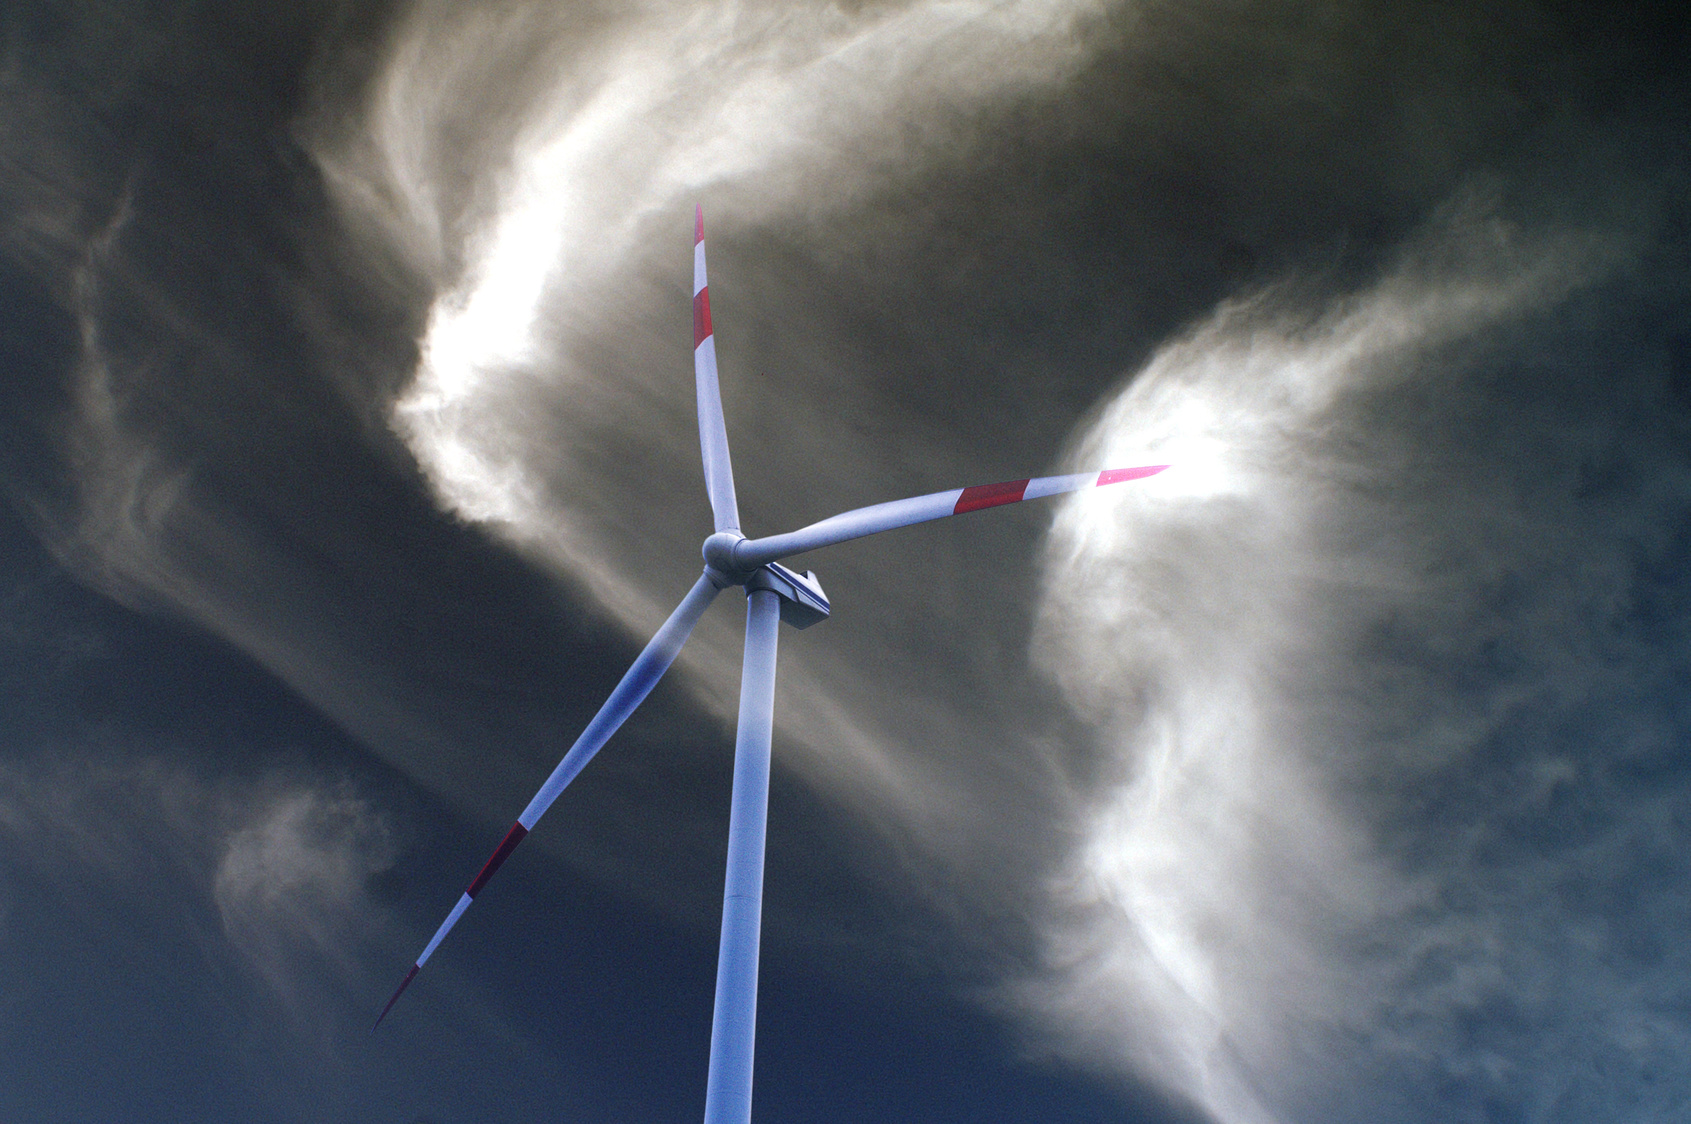 Jade Hochschule und Uni Oldenburg kooperieren in der Windenergieforschung